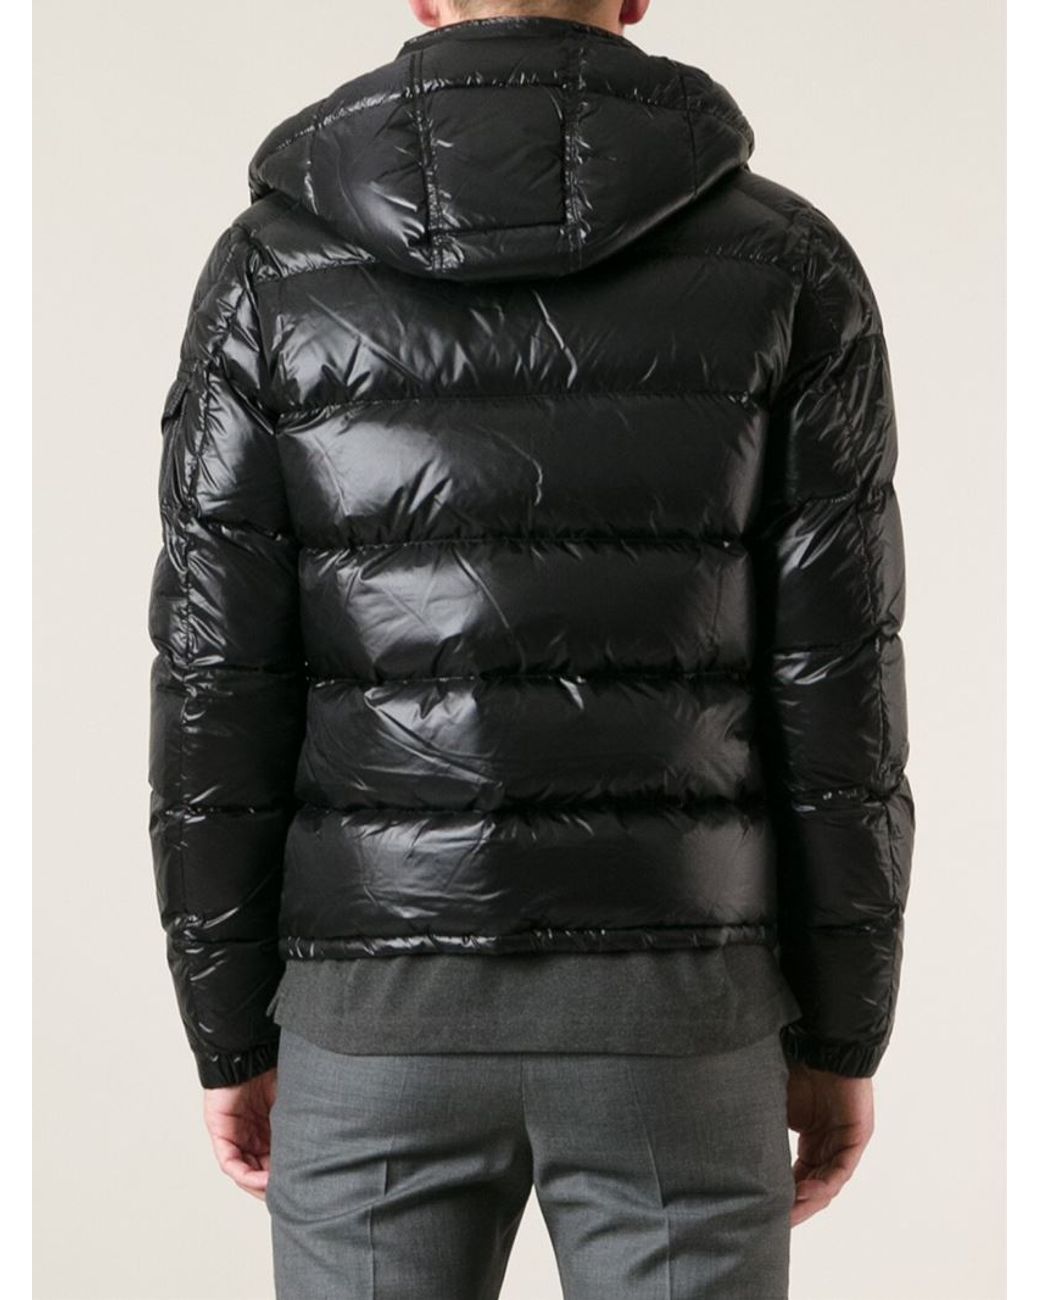 Moncler 'zin' Padded Jacket in Black for Men | Lyst UK